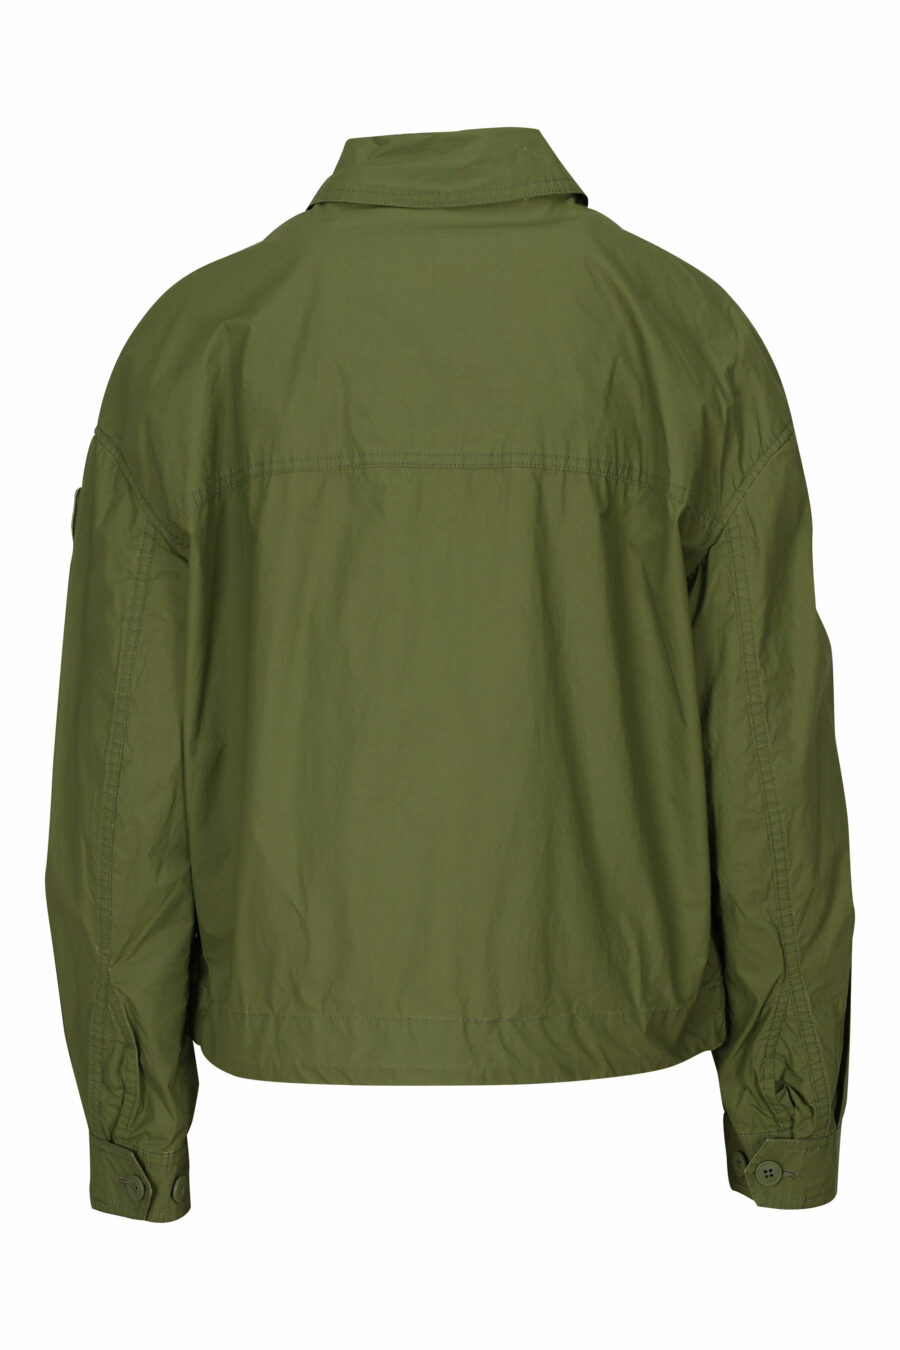 Chaqueta verde militar con bolsillos frontales y logo parche lateral - 8058610712600 2